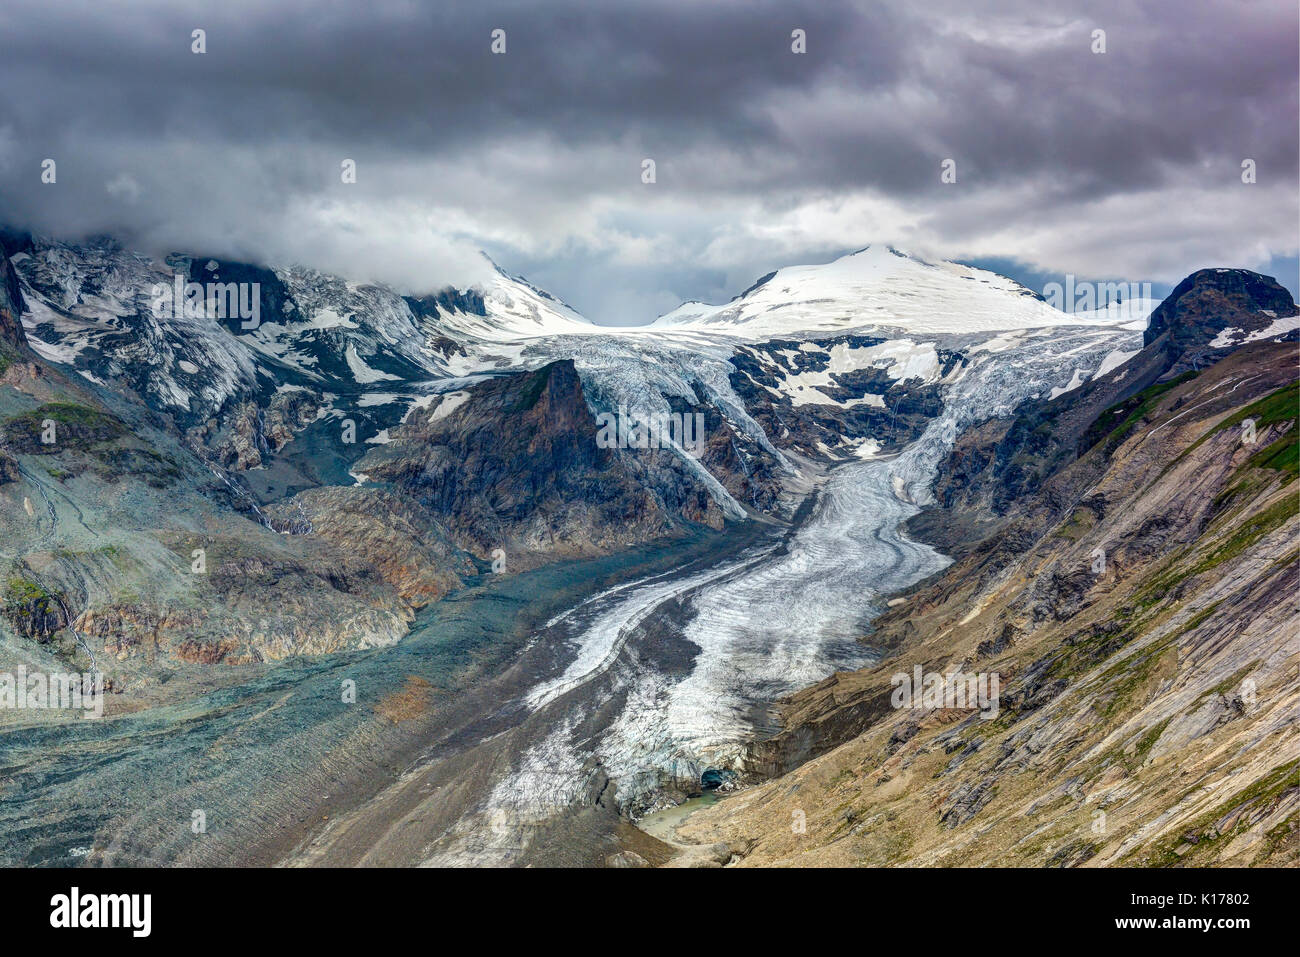 Kaiser-Franz-Josefs-Höhe clacier a pochi minuti prima della tempesta di scioperi Foto Stock